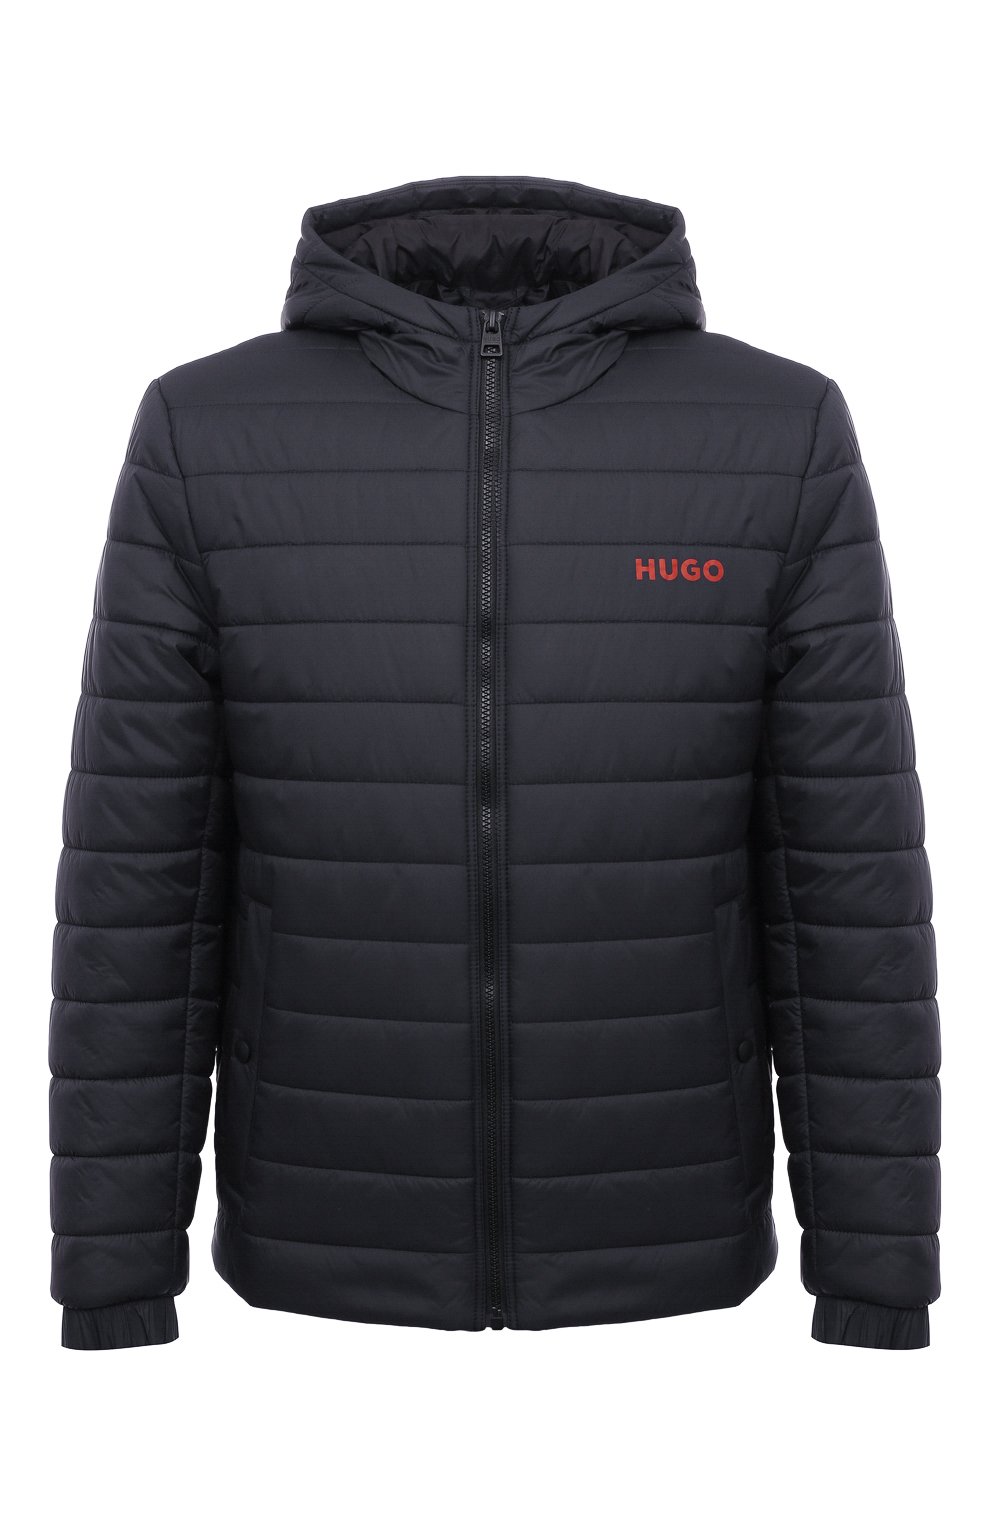 Куртки HUGO, Утепленная куртка HUGO, Вьетнам, Синий, Полиамид (рециклированный): 100%; Подкладка-полиамид: 100%; Наполнитель-полиэстер: 100%;, 13380288  - купить